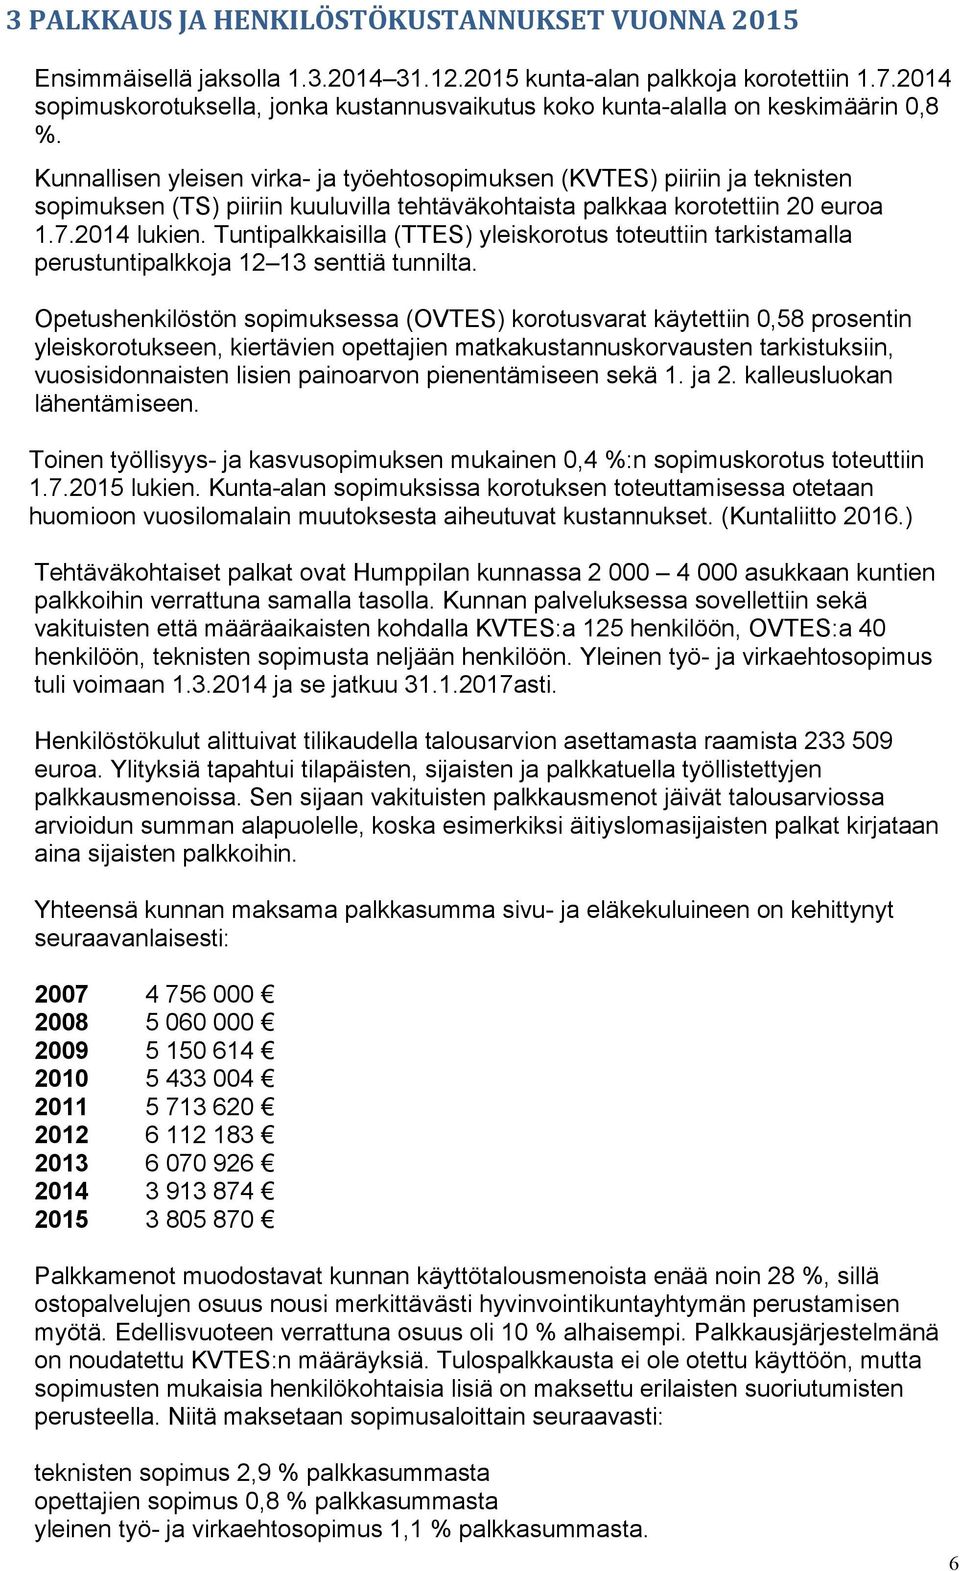 Kunnallisen yleisen virka- ja työehtosopimuksen (KVTES) piiriin ja teknisten sopimuksen (TS) piiriin kuuluvilla tehtäväkohtaista palkkaa korotettiin 20 euroa 1.7.2014 lukien.